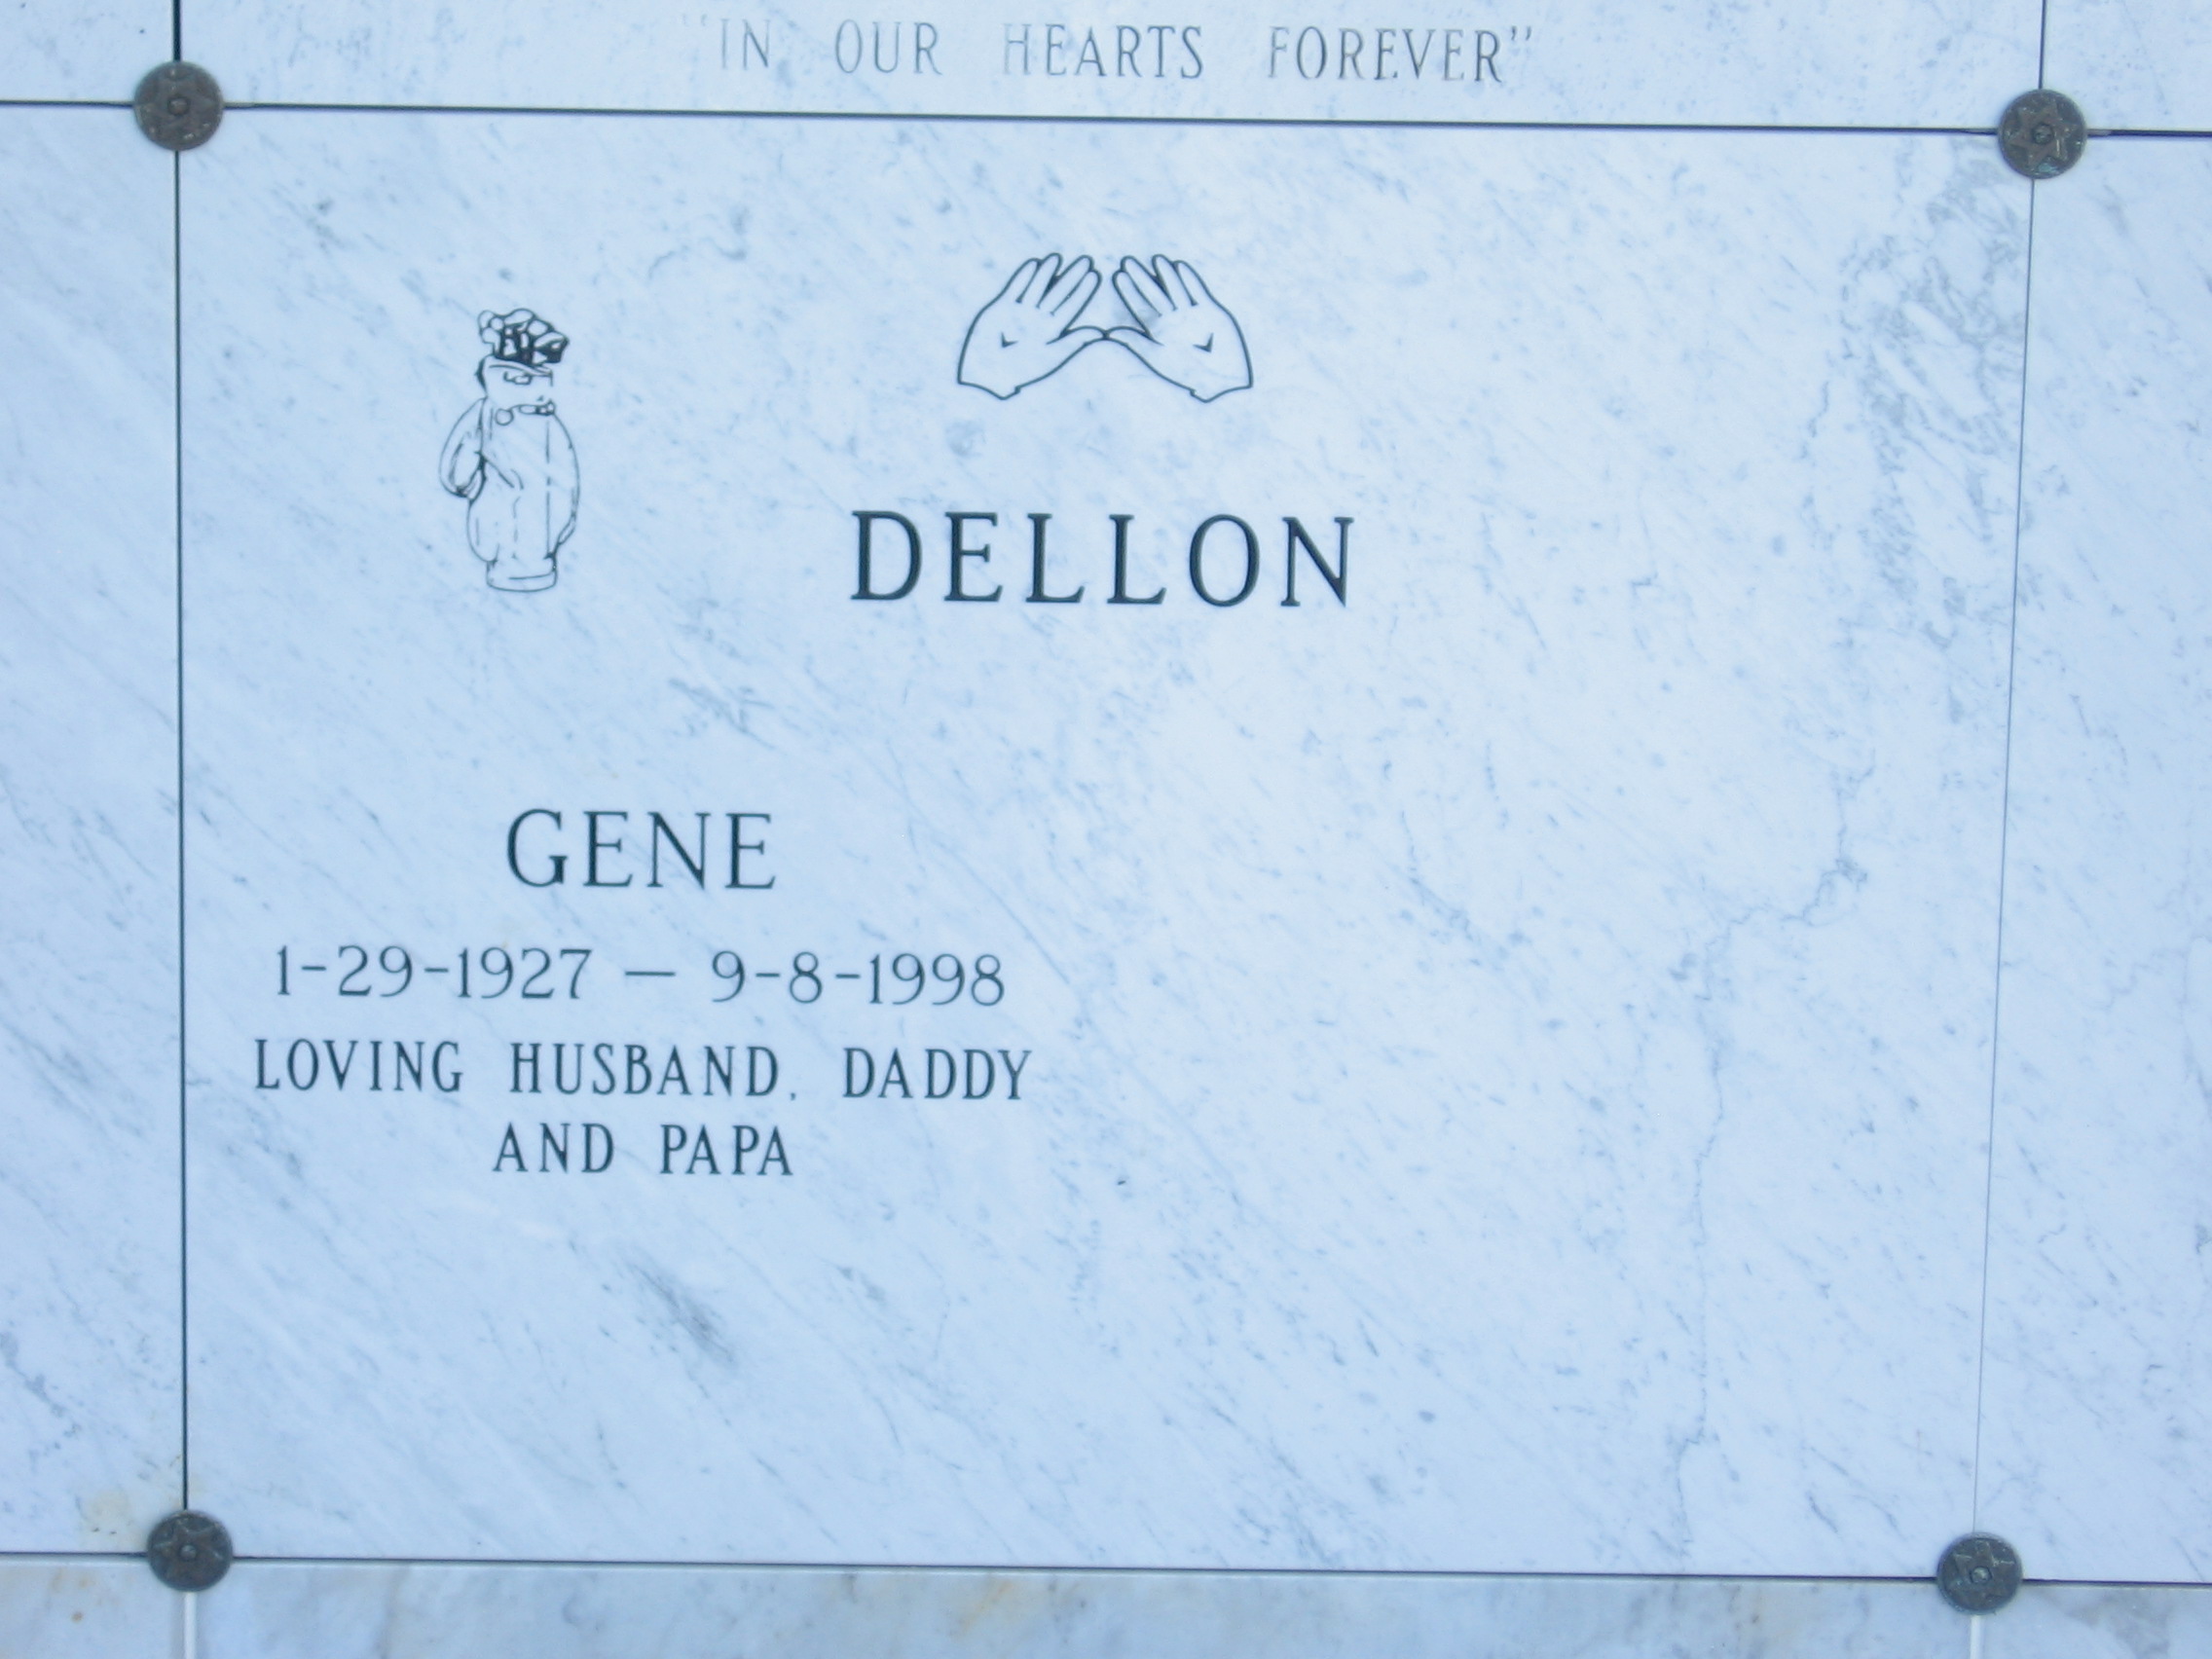 Gene Dellon